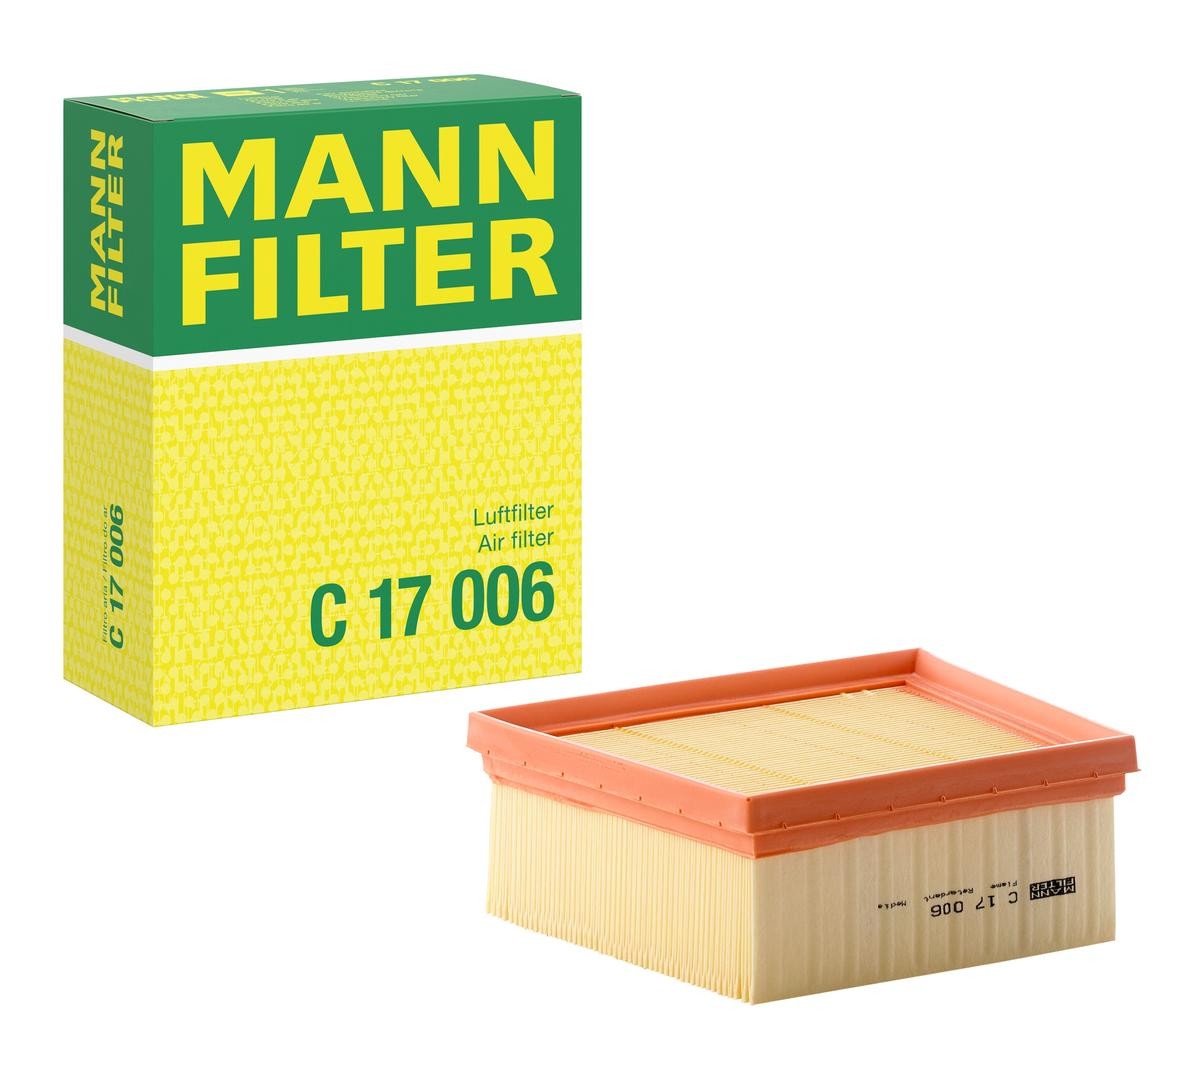 MANN-FILTER C 17 006 Air filter 70mm, 198mm, 161mm, Filter Insert